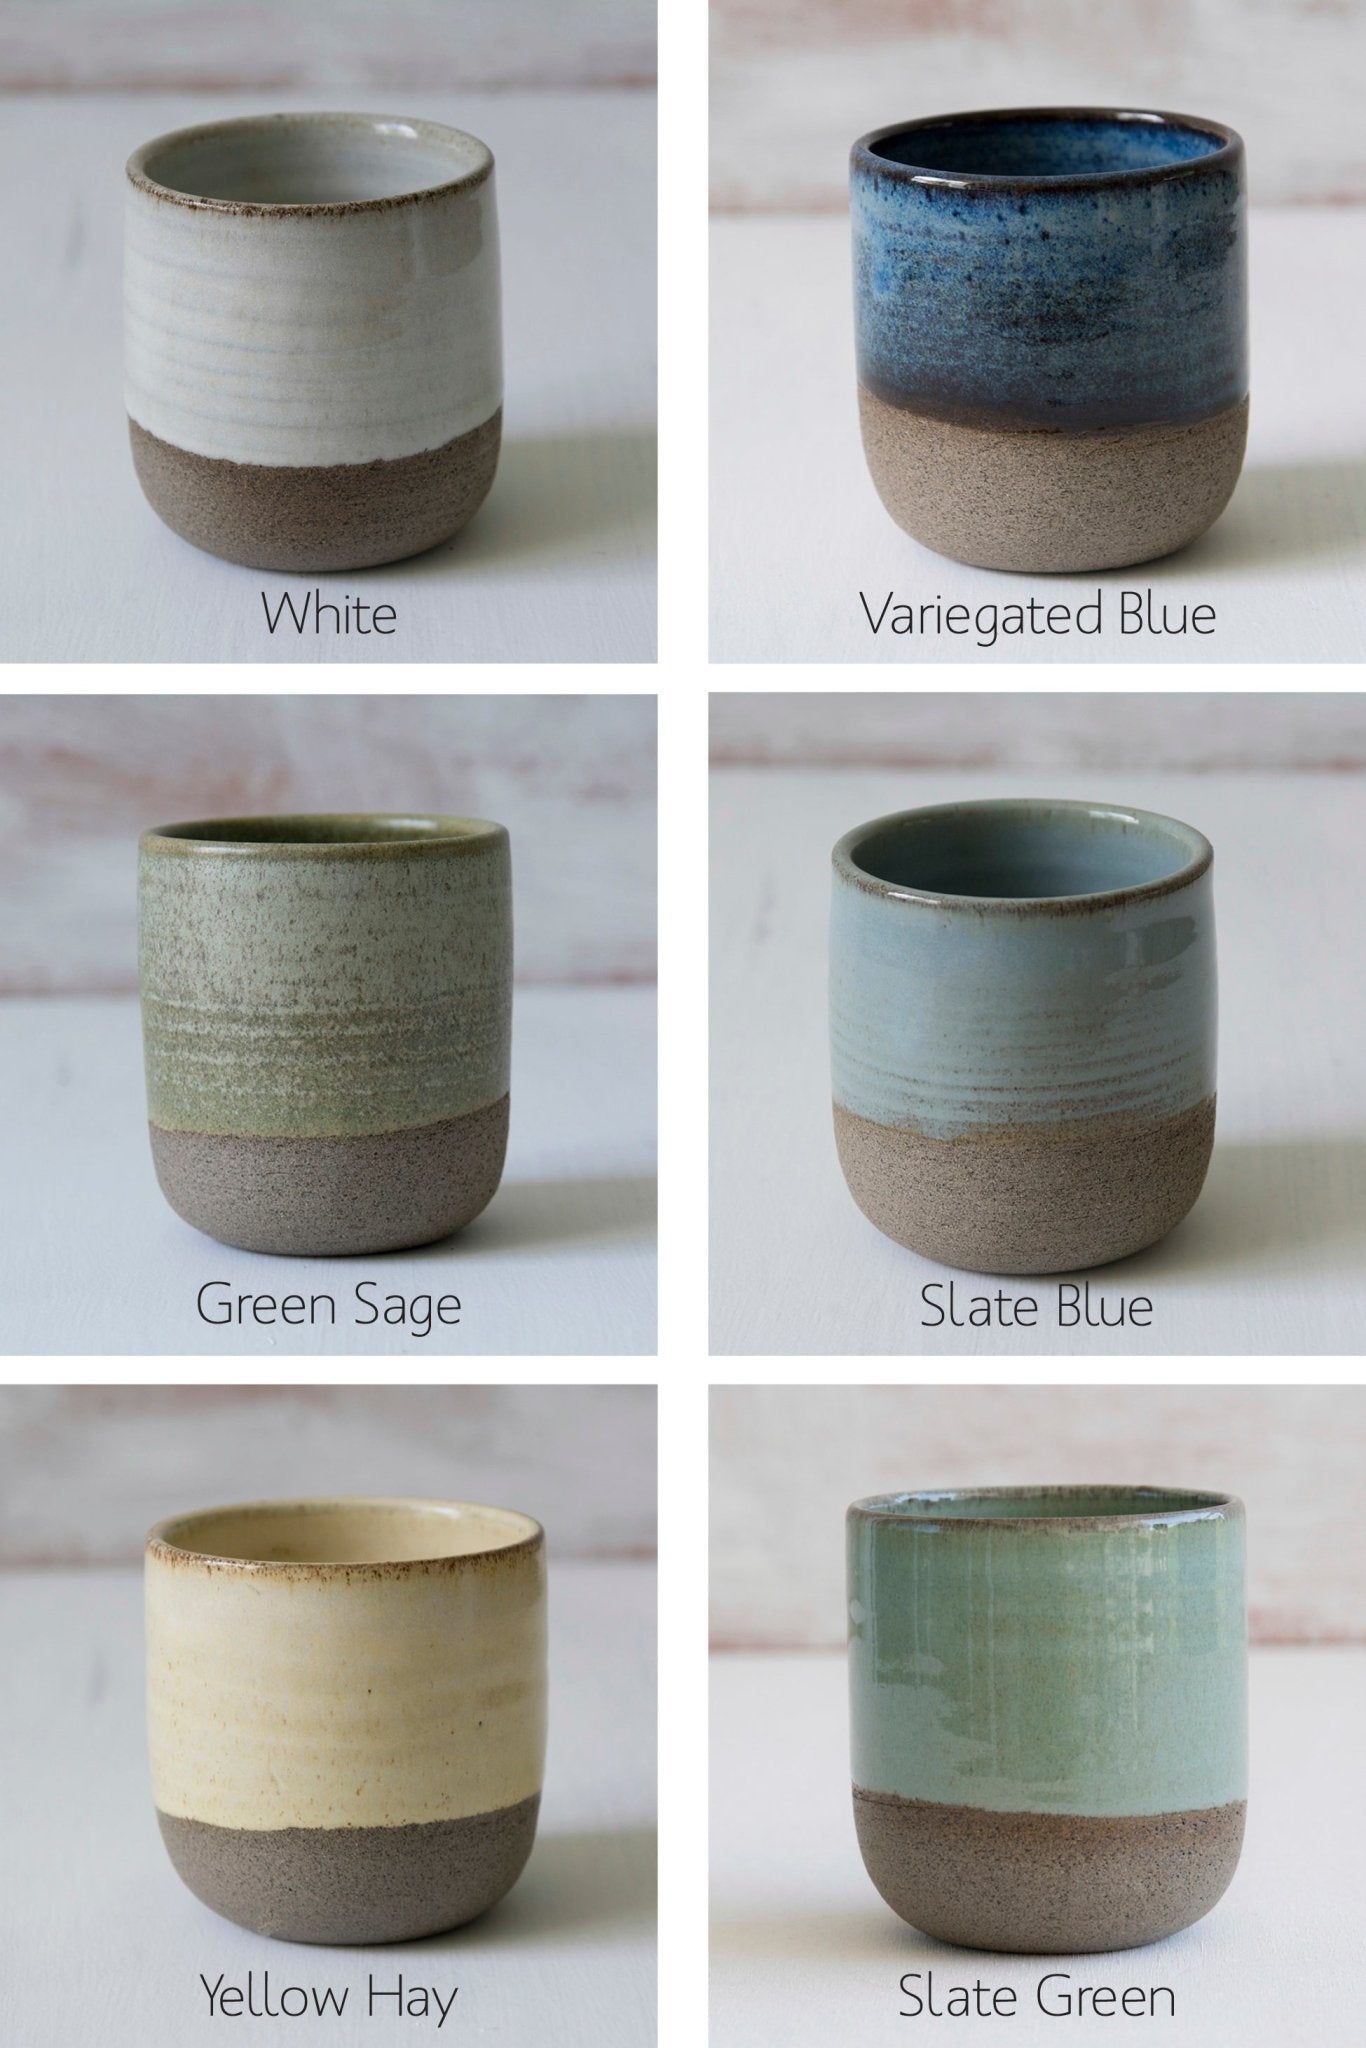 Aires Glossy White Espresso Mugs — Every Story Ceramics